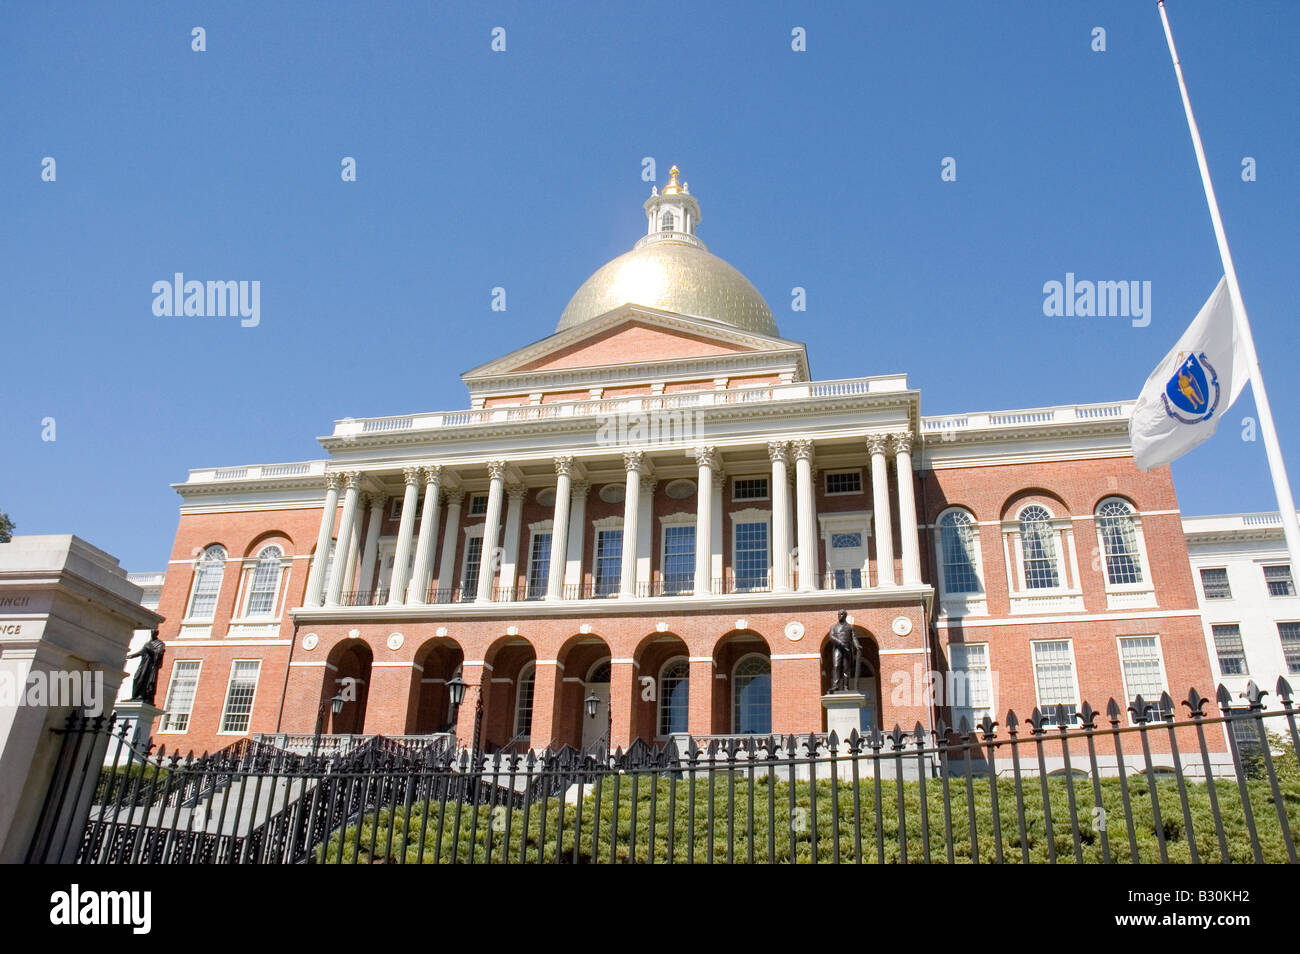 Massachusetts Statehouse on Beacon Hill in Boston Stock Photo